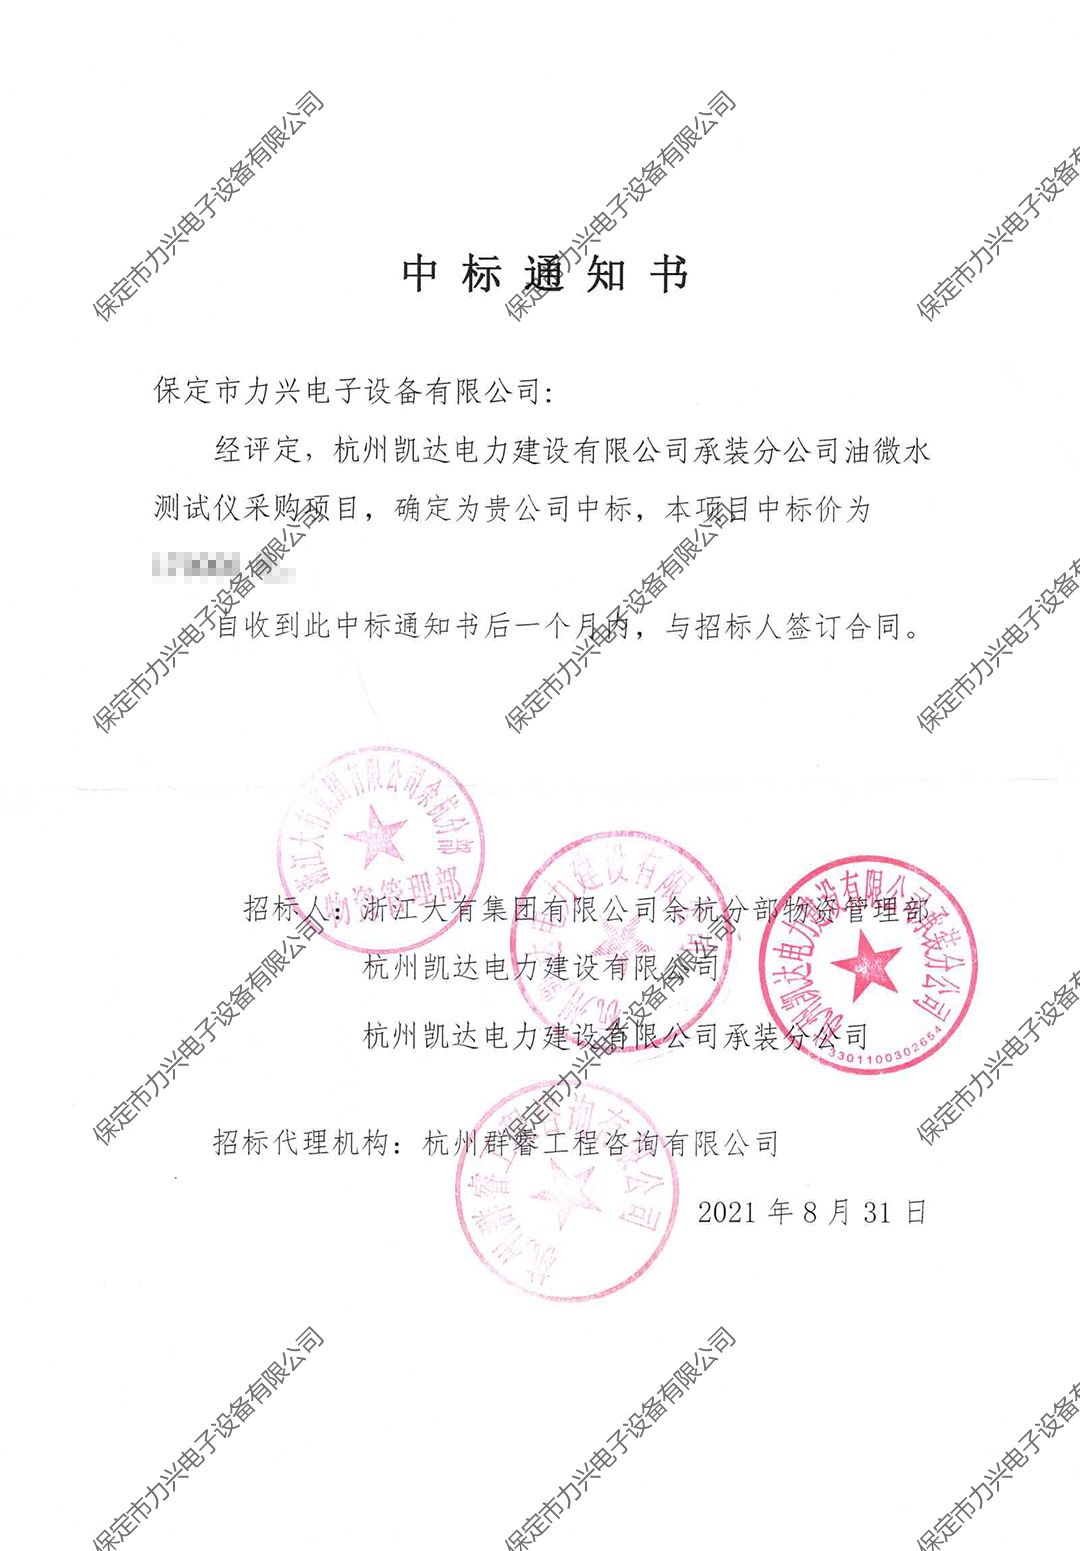 杭州凱達電力建設有限公司承裝分公司油微水測試儀采購項目.jpg